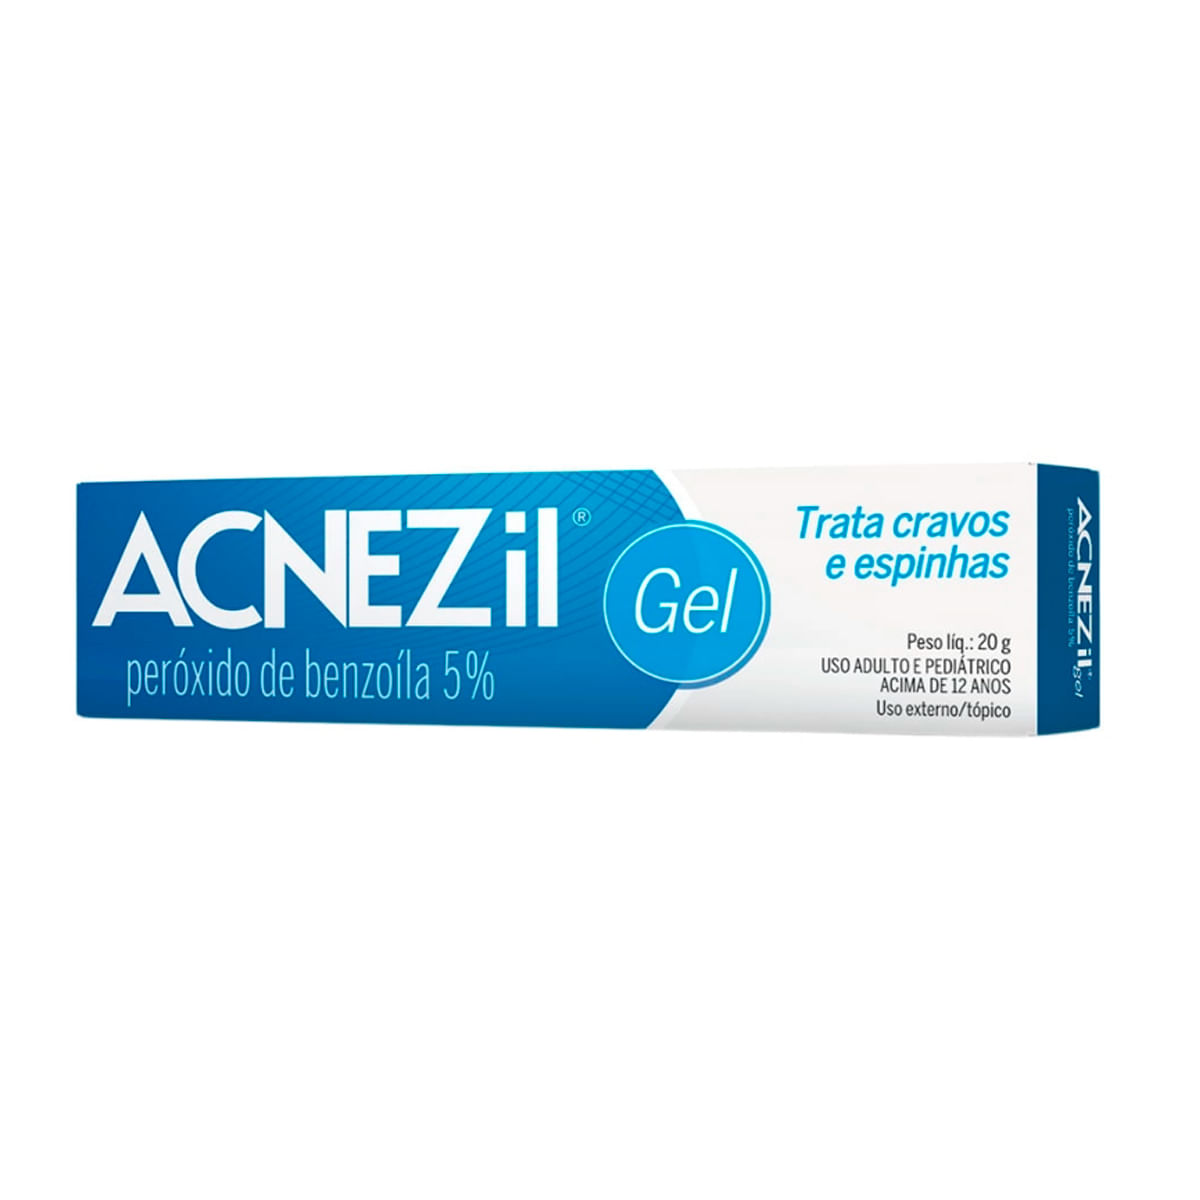 Acnezil Gel Peróxido de Benzoíla 5% Tratamento de Cravos e Espinhas CIMED